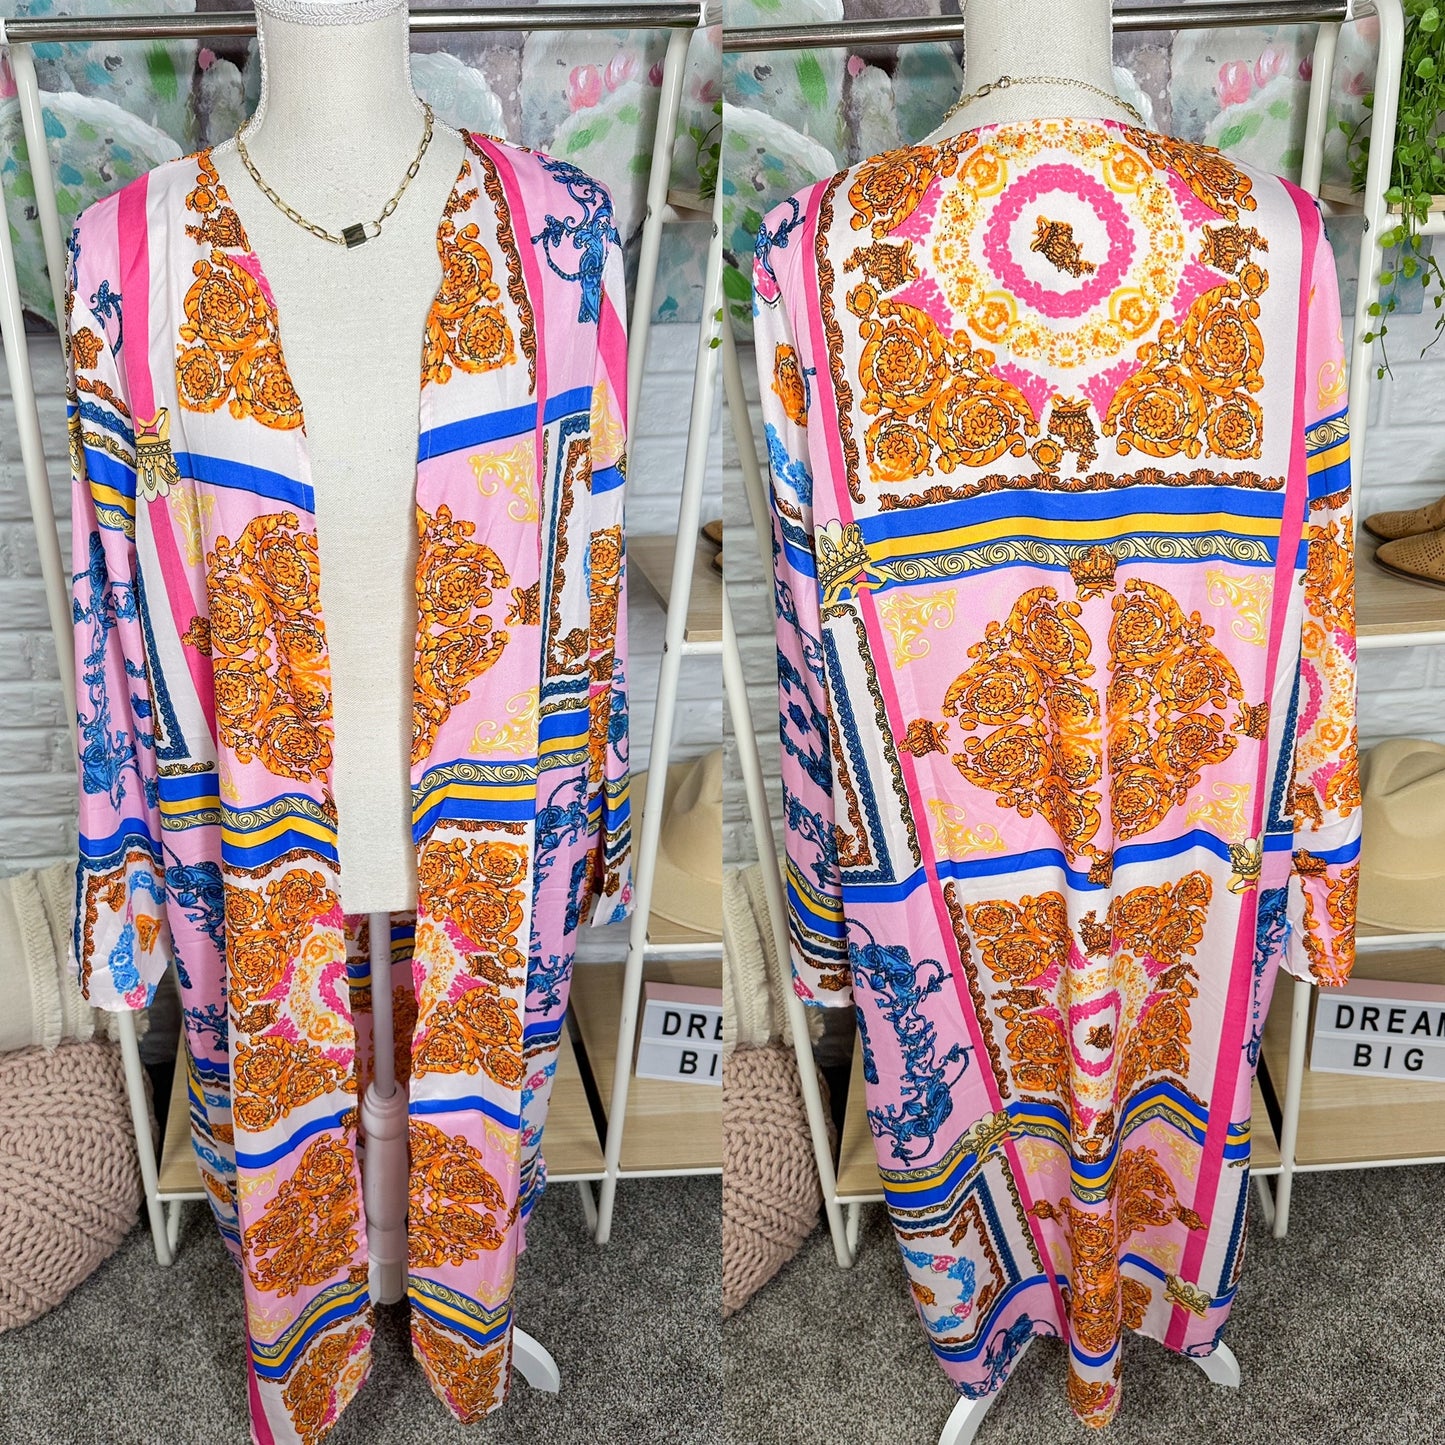 Boohoo New Plus Scarf Print Kimono Size 12